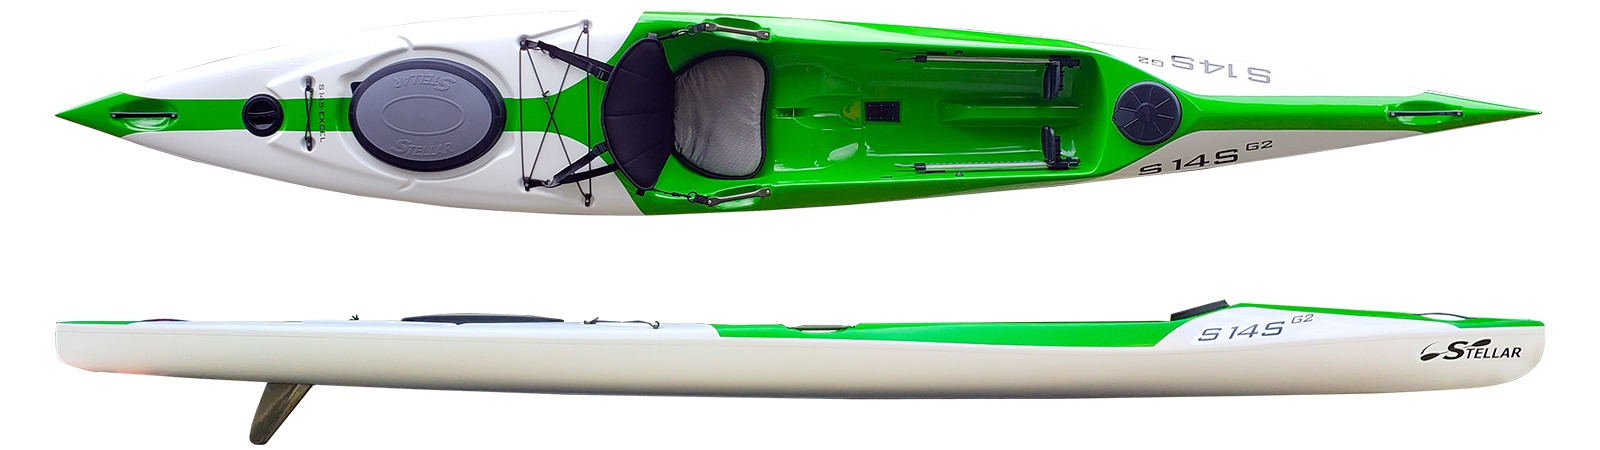 stellar.kayaks.s14s.g2.top.side